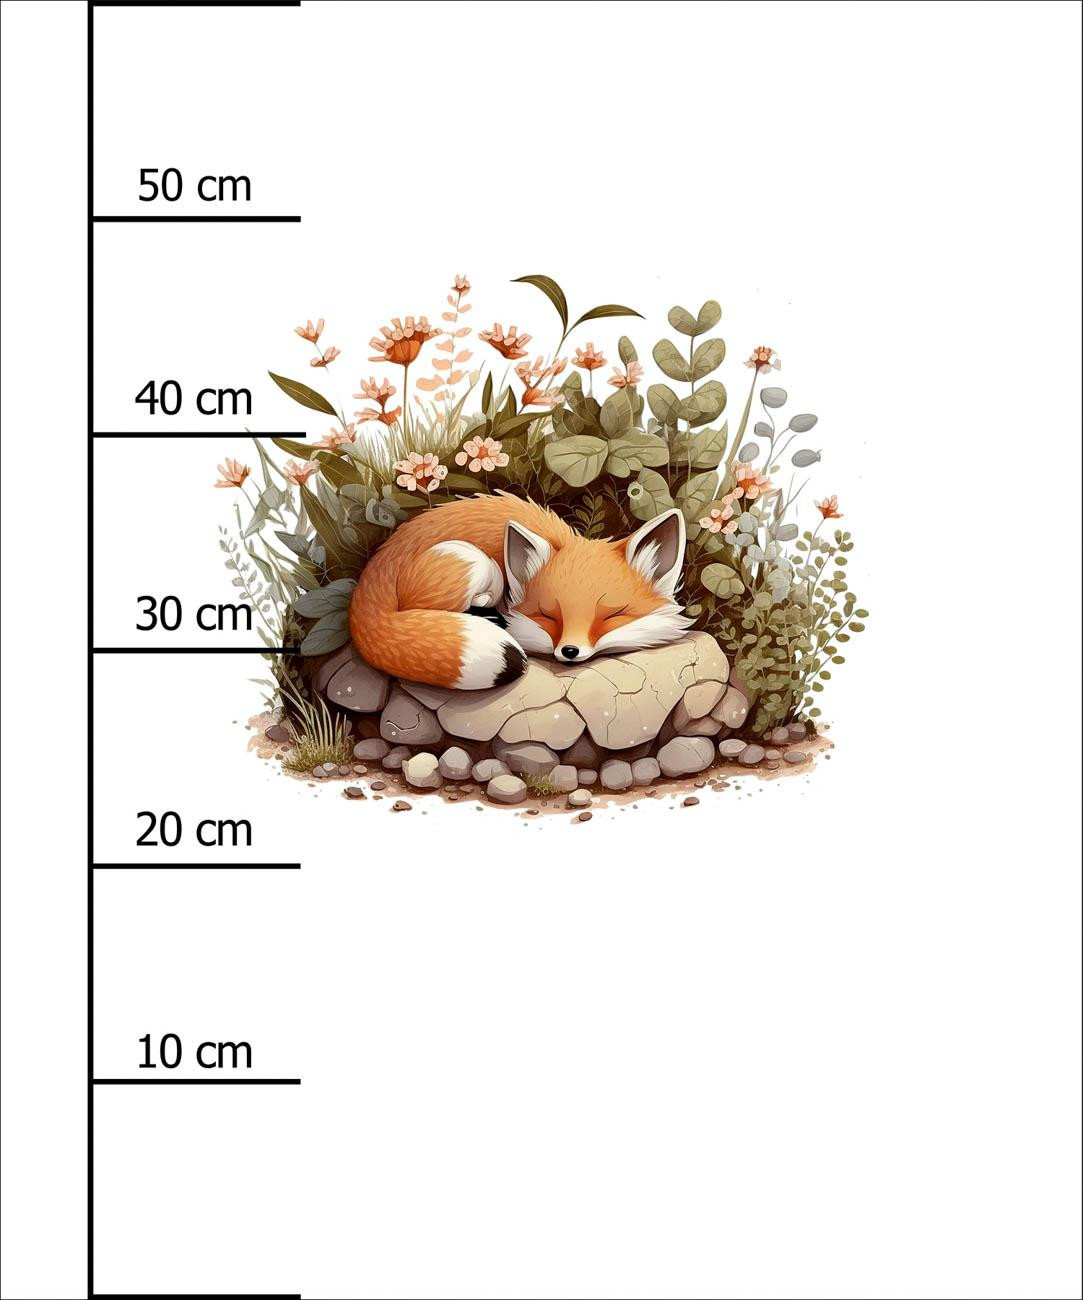 SLEEPING FOX - Paneel (60cm x 50cm)